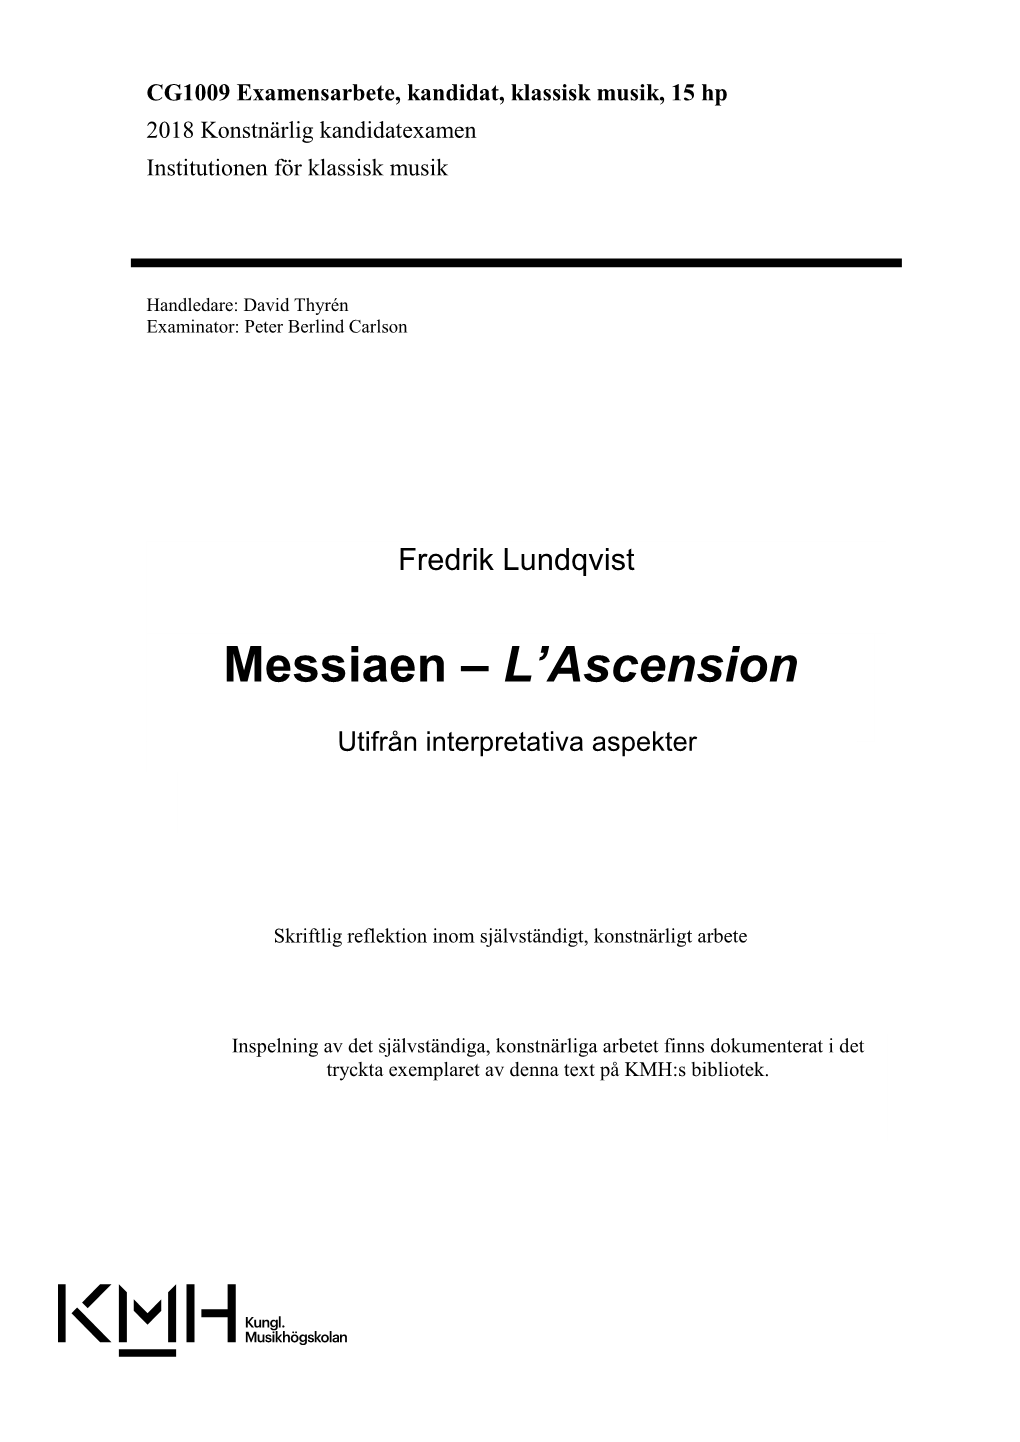 Messiaen – L’Ascension